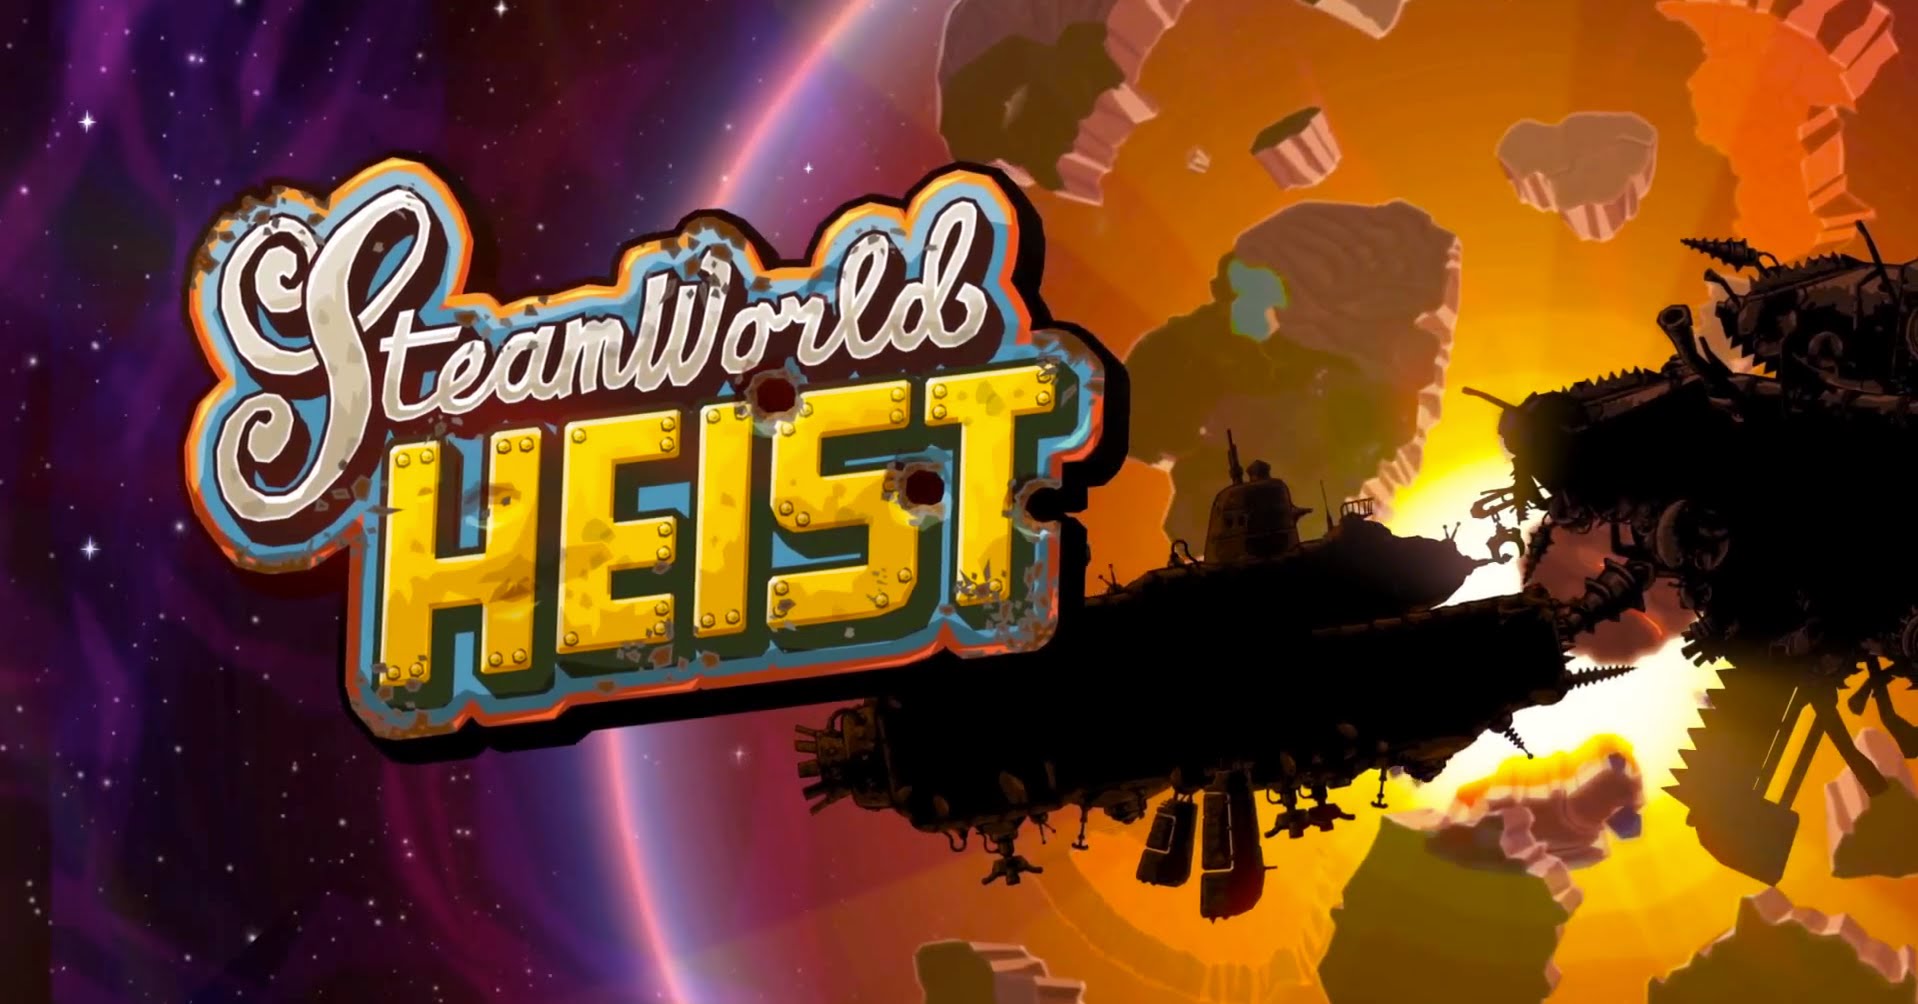 Steamworld heist